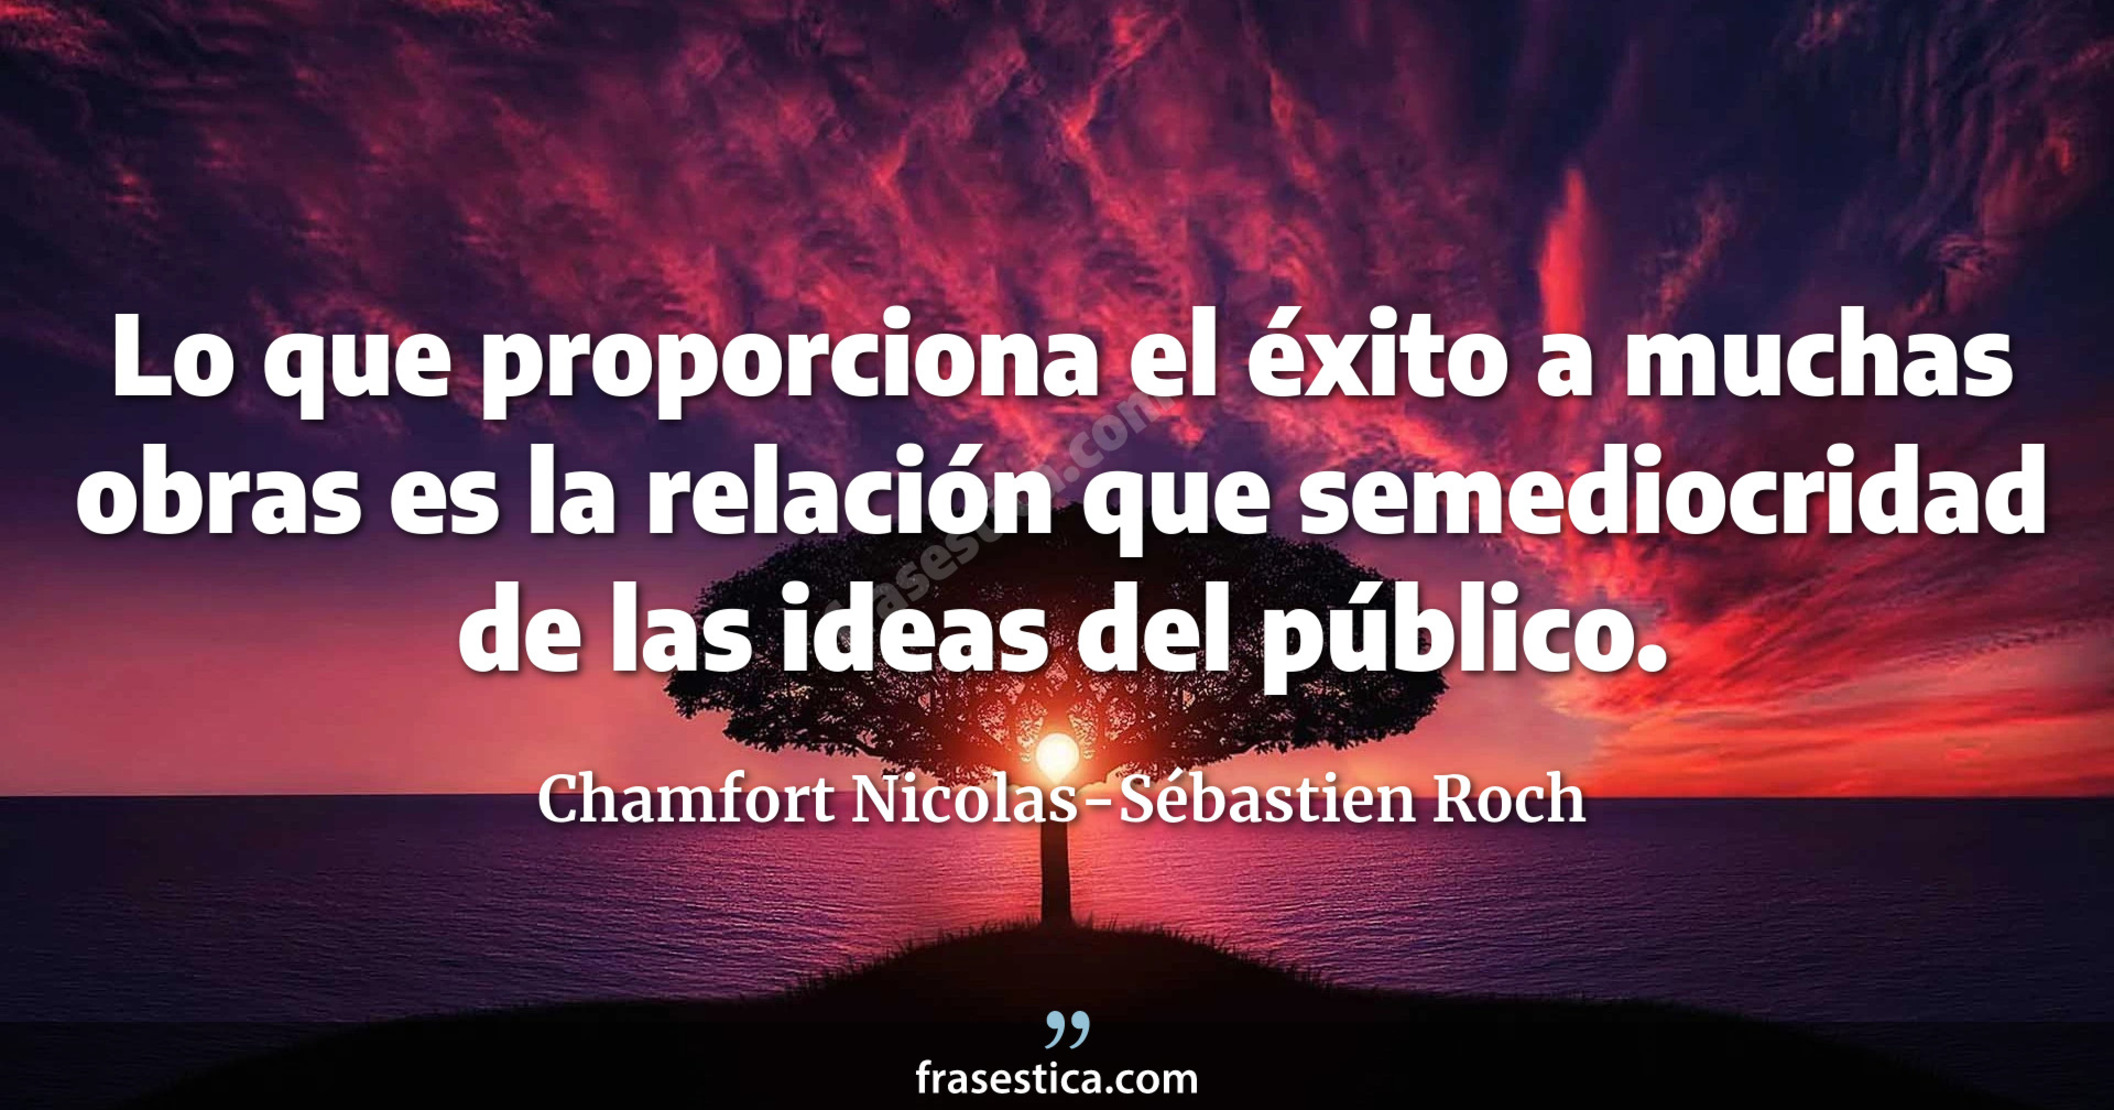 Lo que proporciona el éxito a muchas obras es la relación que semediocridad de las ideas del público. - Chamfort Nicolas-Sébastien Roch